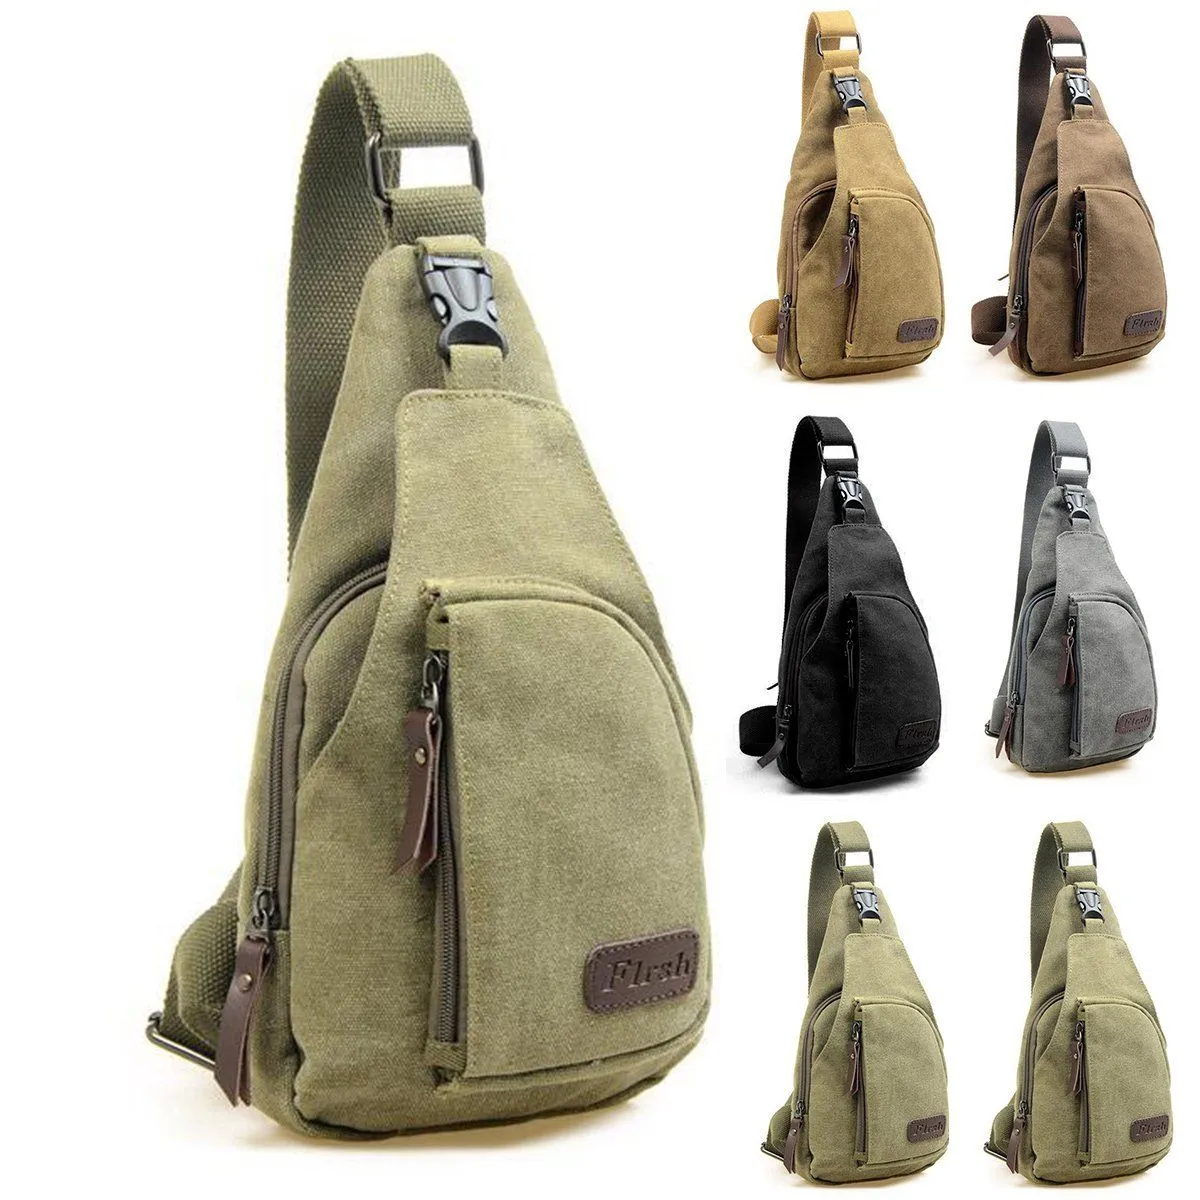 New Men Handbag Vintage Canvas Leather Crossbody Bag Satchel Shoulder Bag Sling Chest PackBag